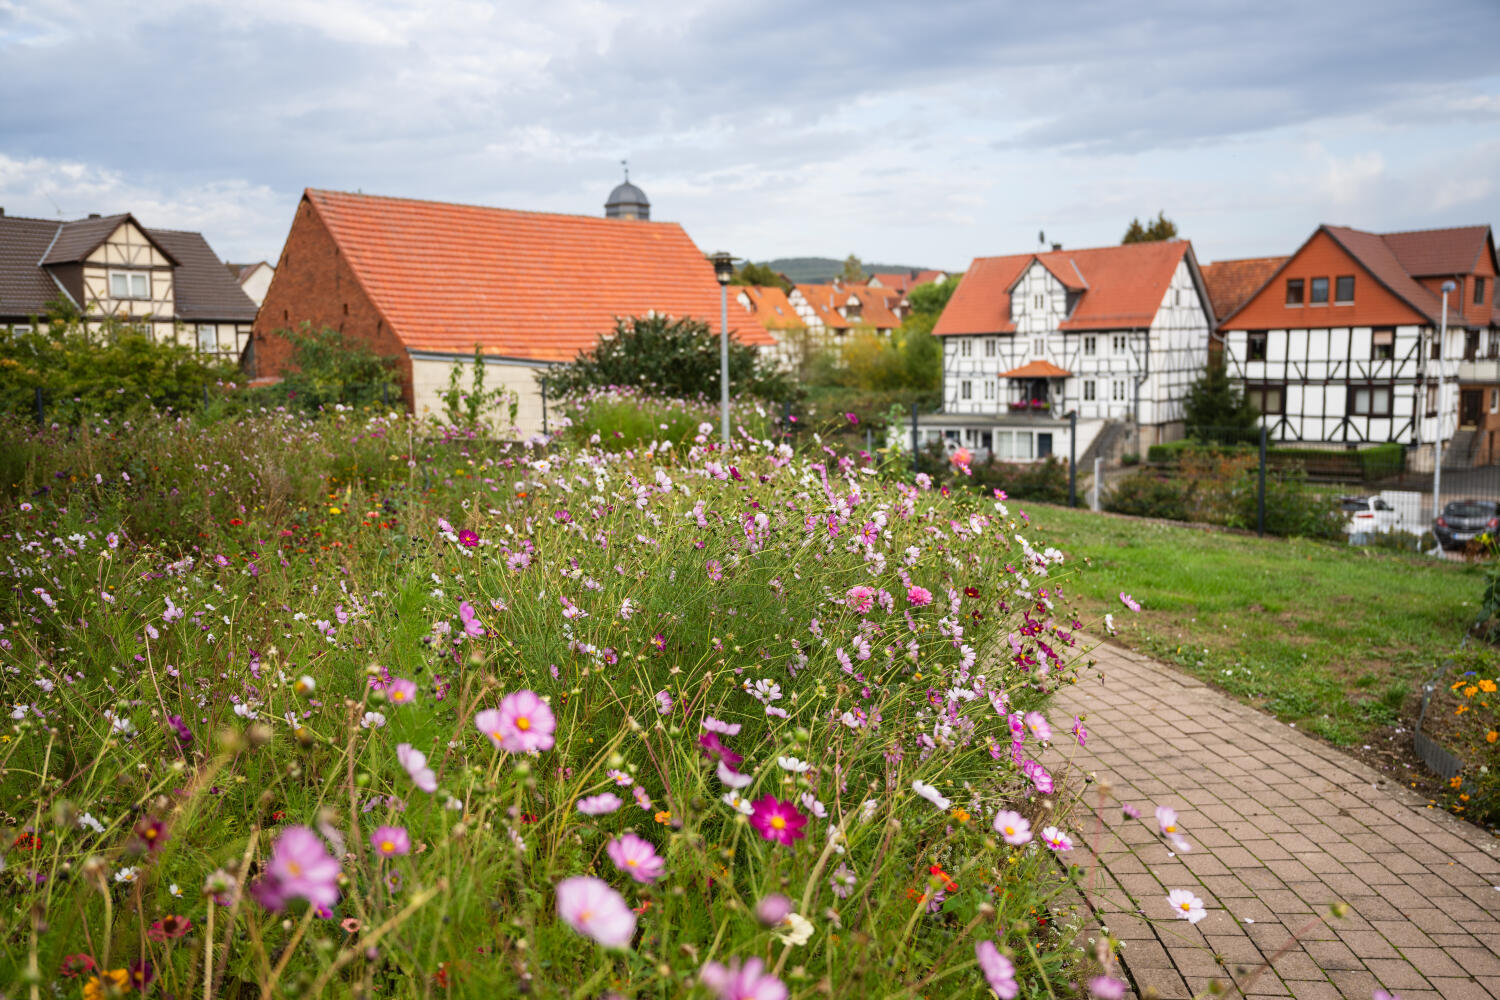 Im Vordergrund blühendes Blumenbeet. Rechts ein gepflasterter Weg mit Blick ins Dorf mit Fachwerkhäusern.